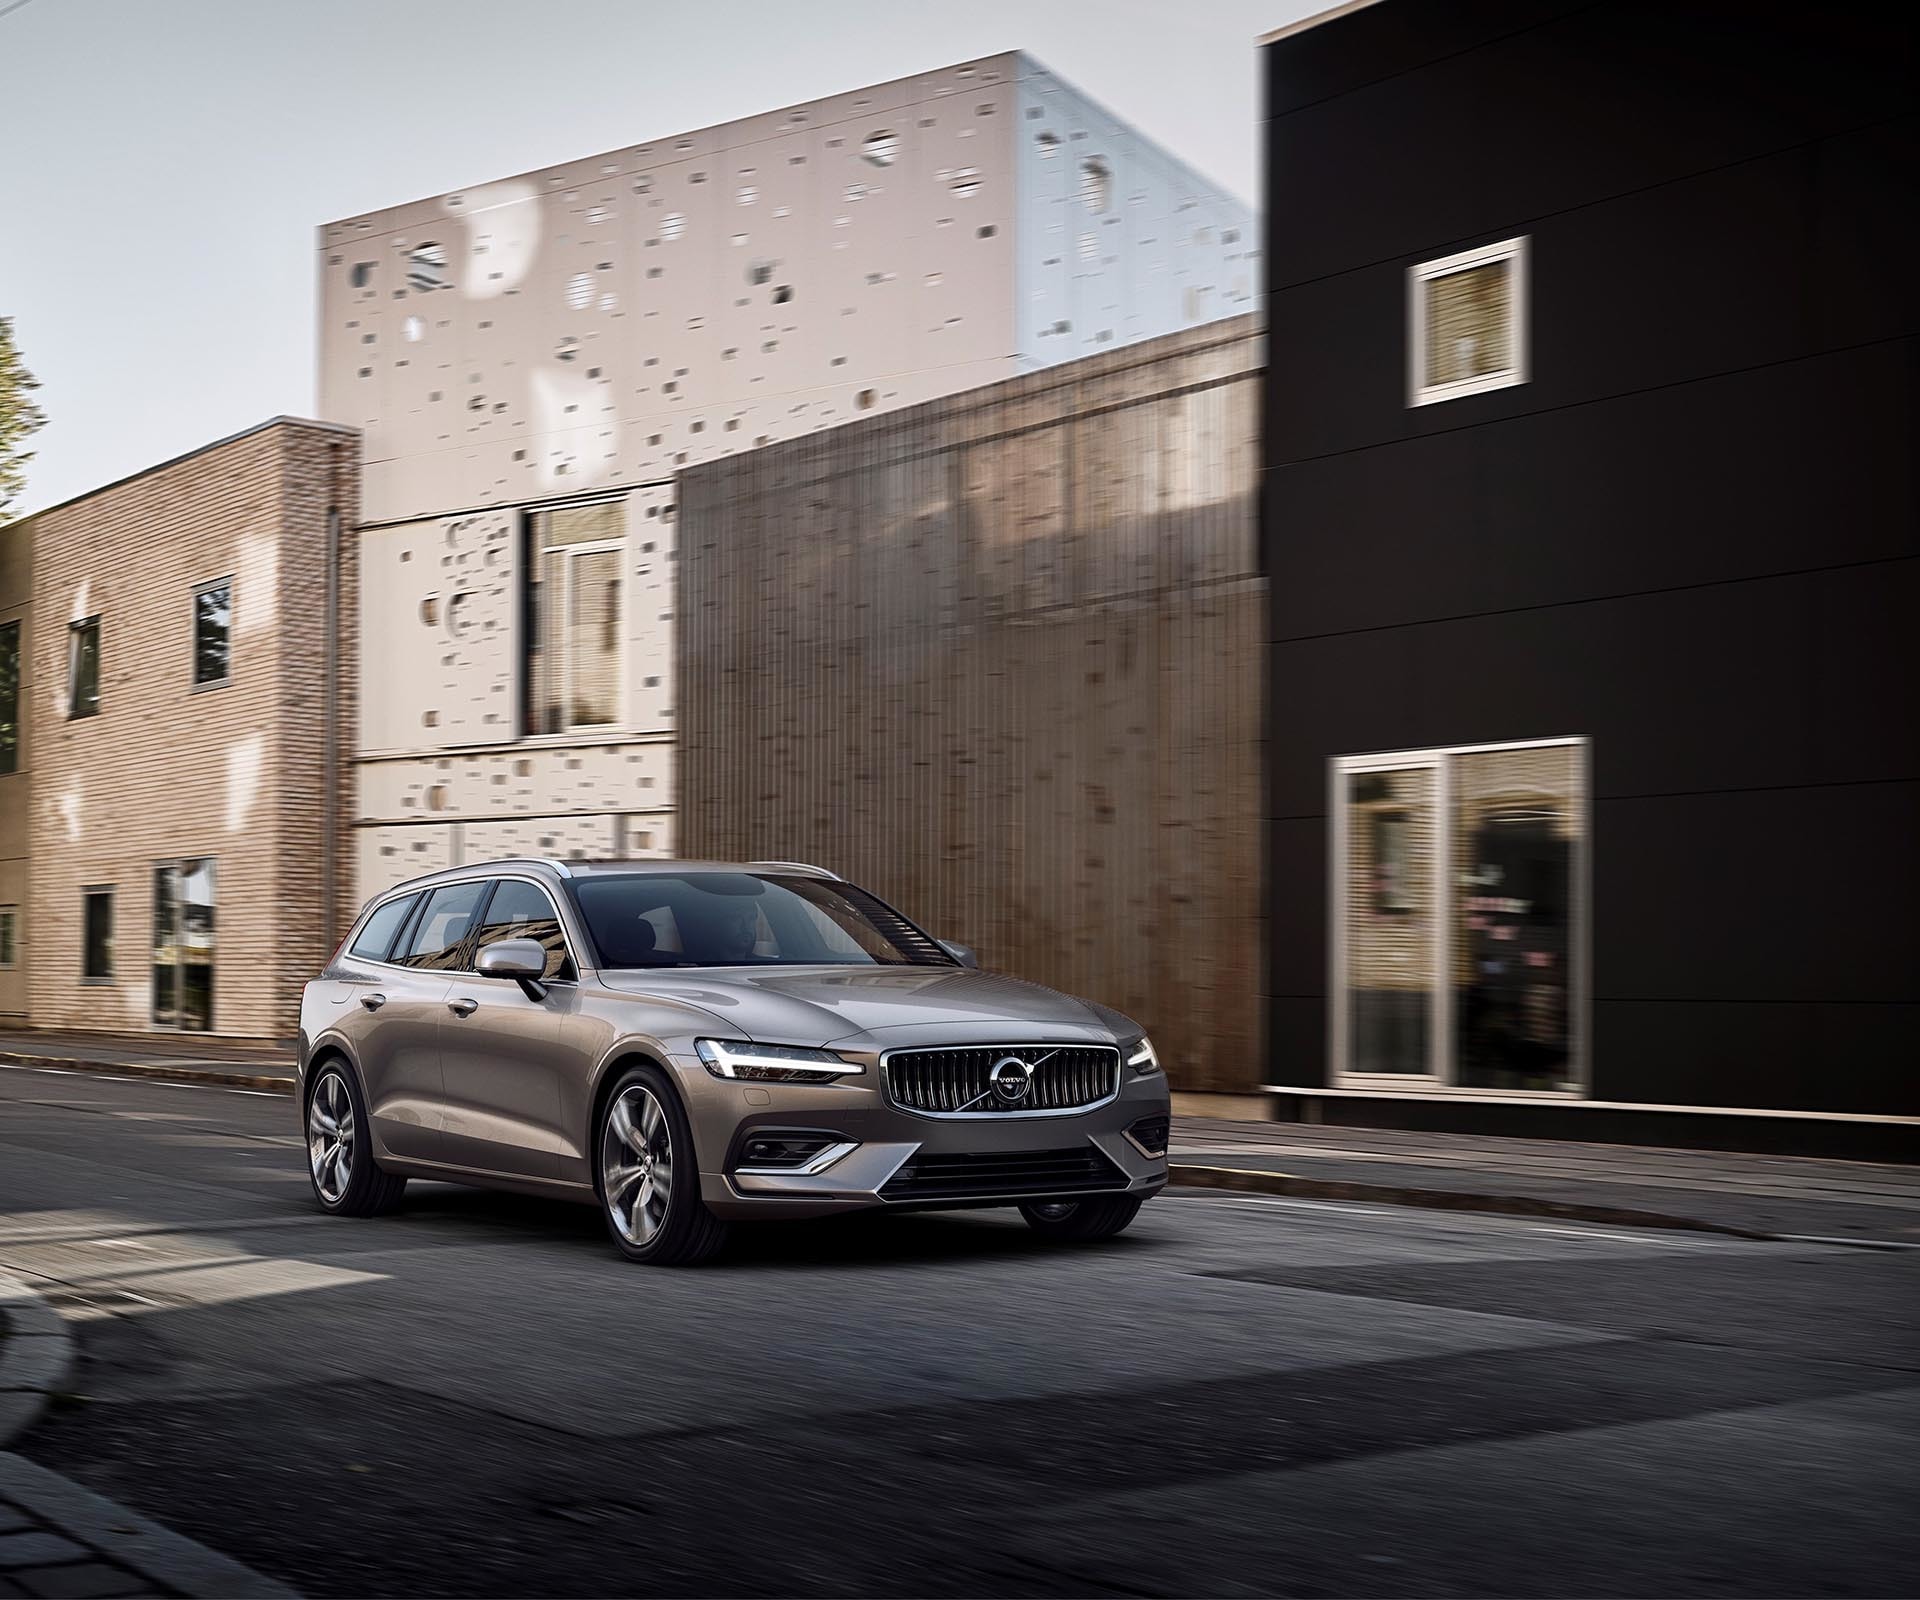 Volvo V60 en entorno urbano, perspectiva frontal y lateral, destaca diseño moderno.